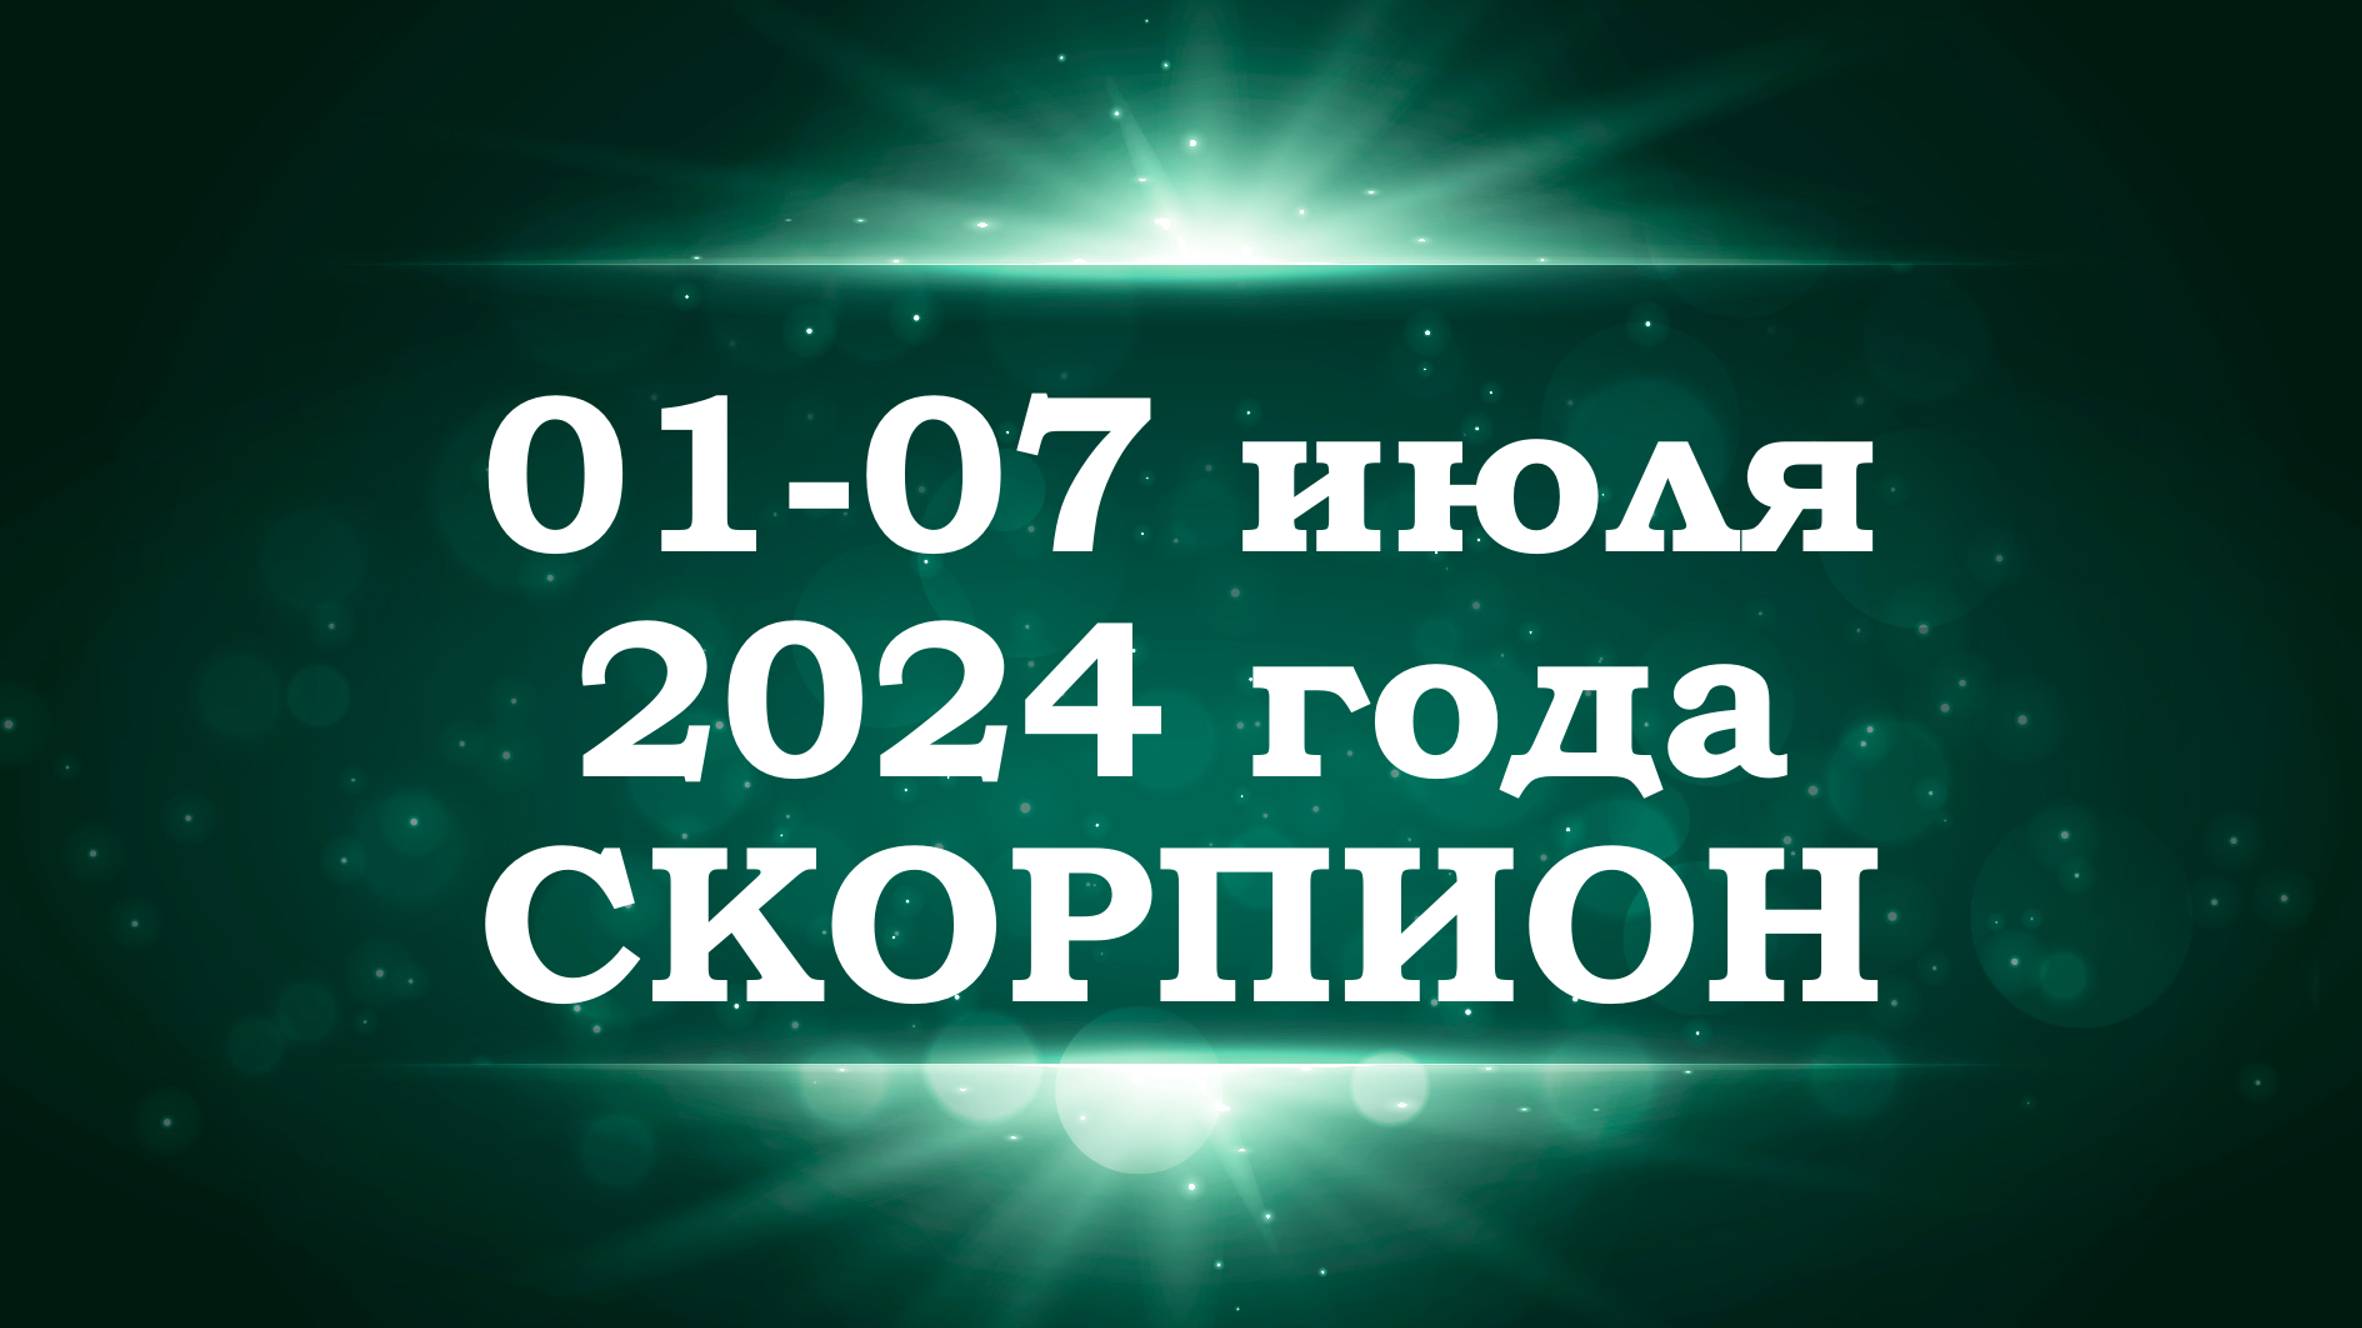 СКОРПИОН | ТАРО прогноз на неделю с 1 по 7 июля 2024 года